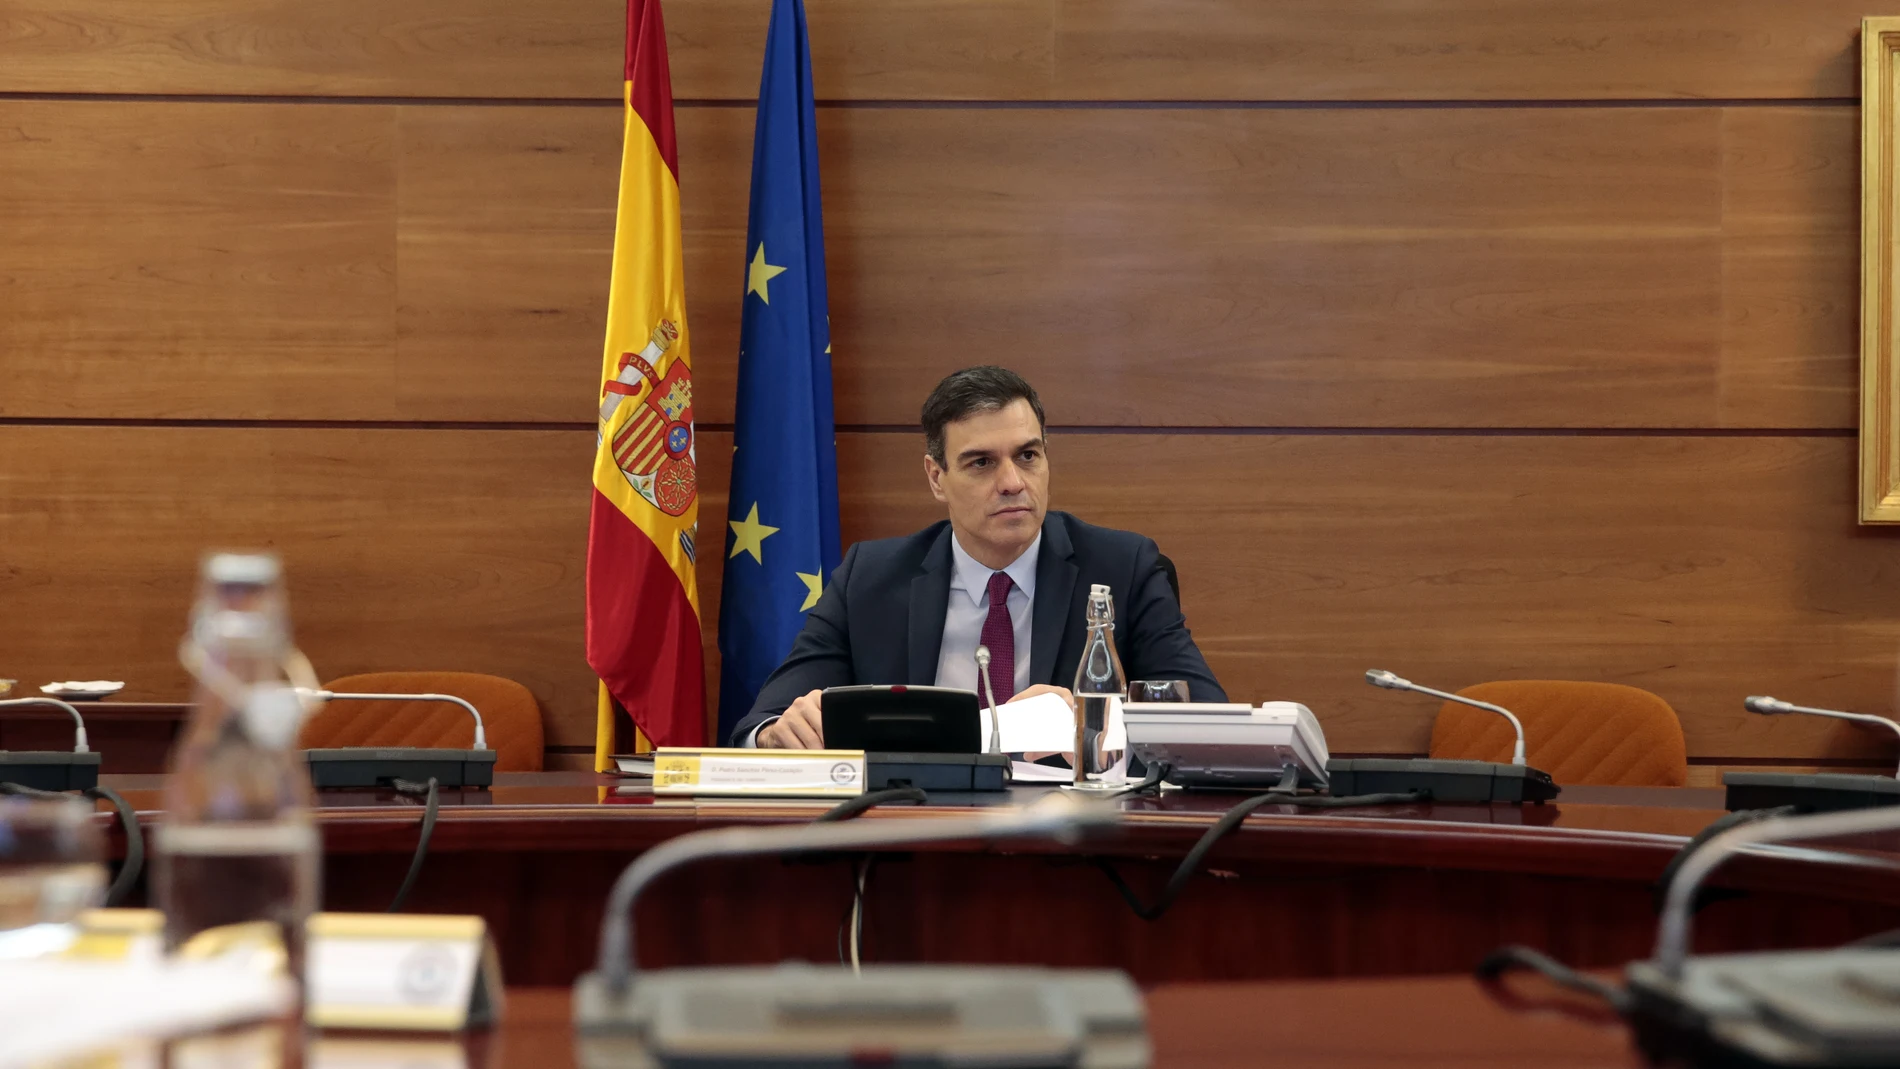 El presidente del Gobierno, Pedro Sánchez, durante el Consejo de Ministros Extraordinario celebrado hoy en Moncloa